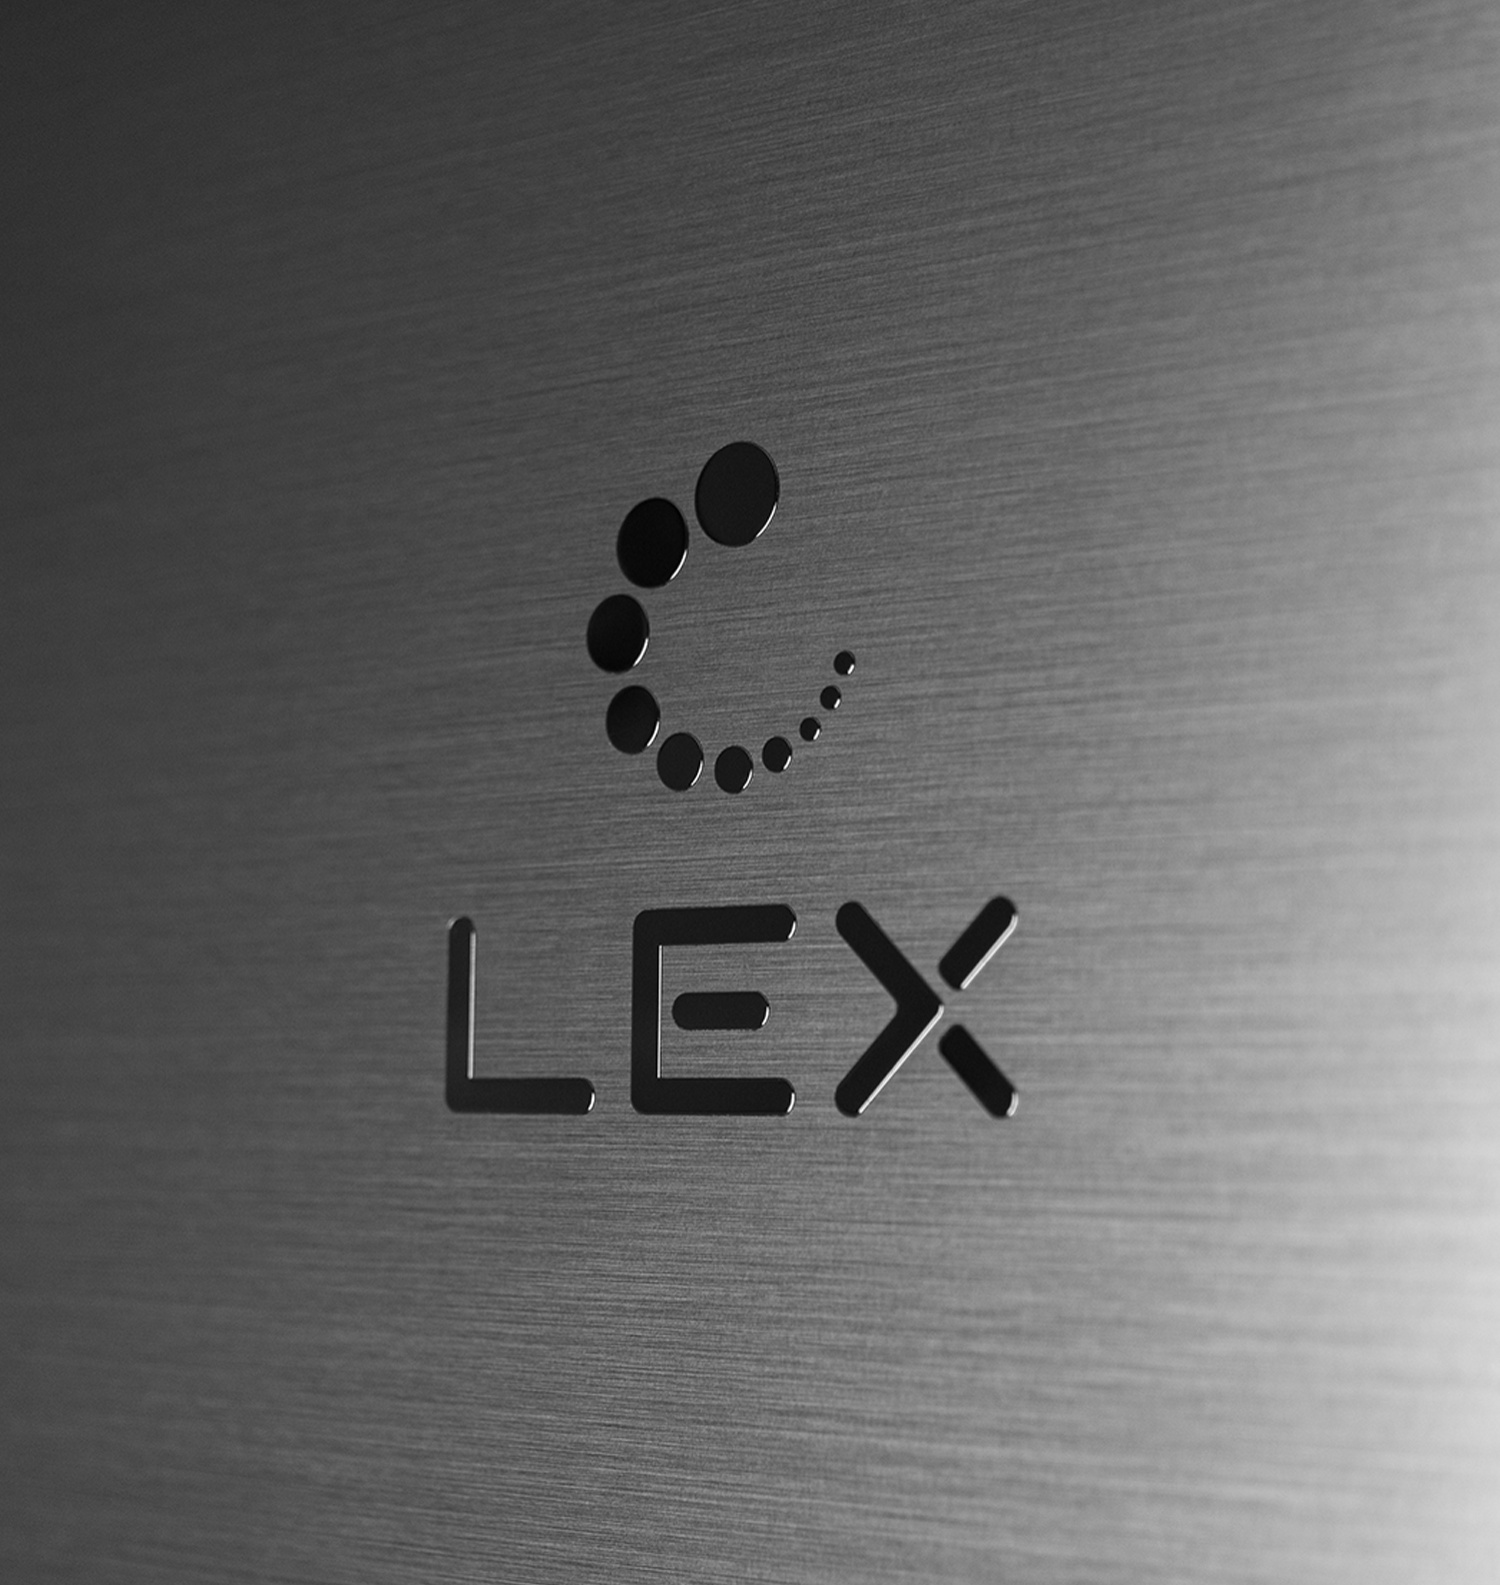 Холодильник LEX RFS 205 DF INOX